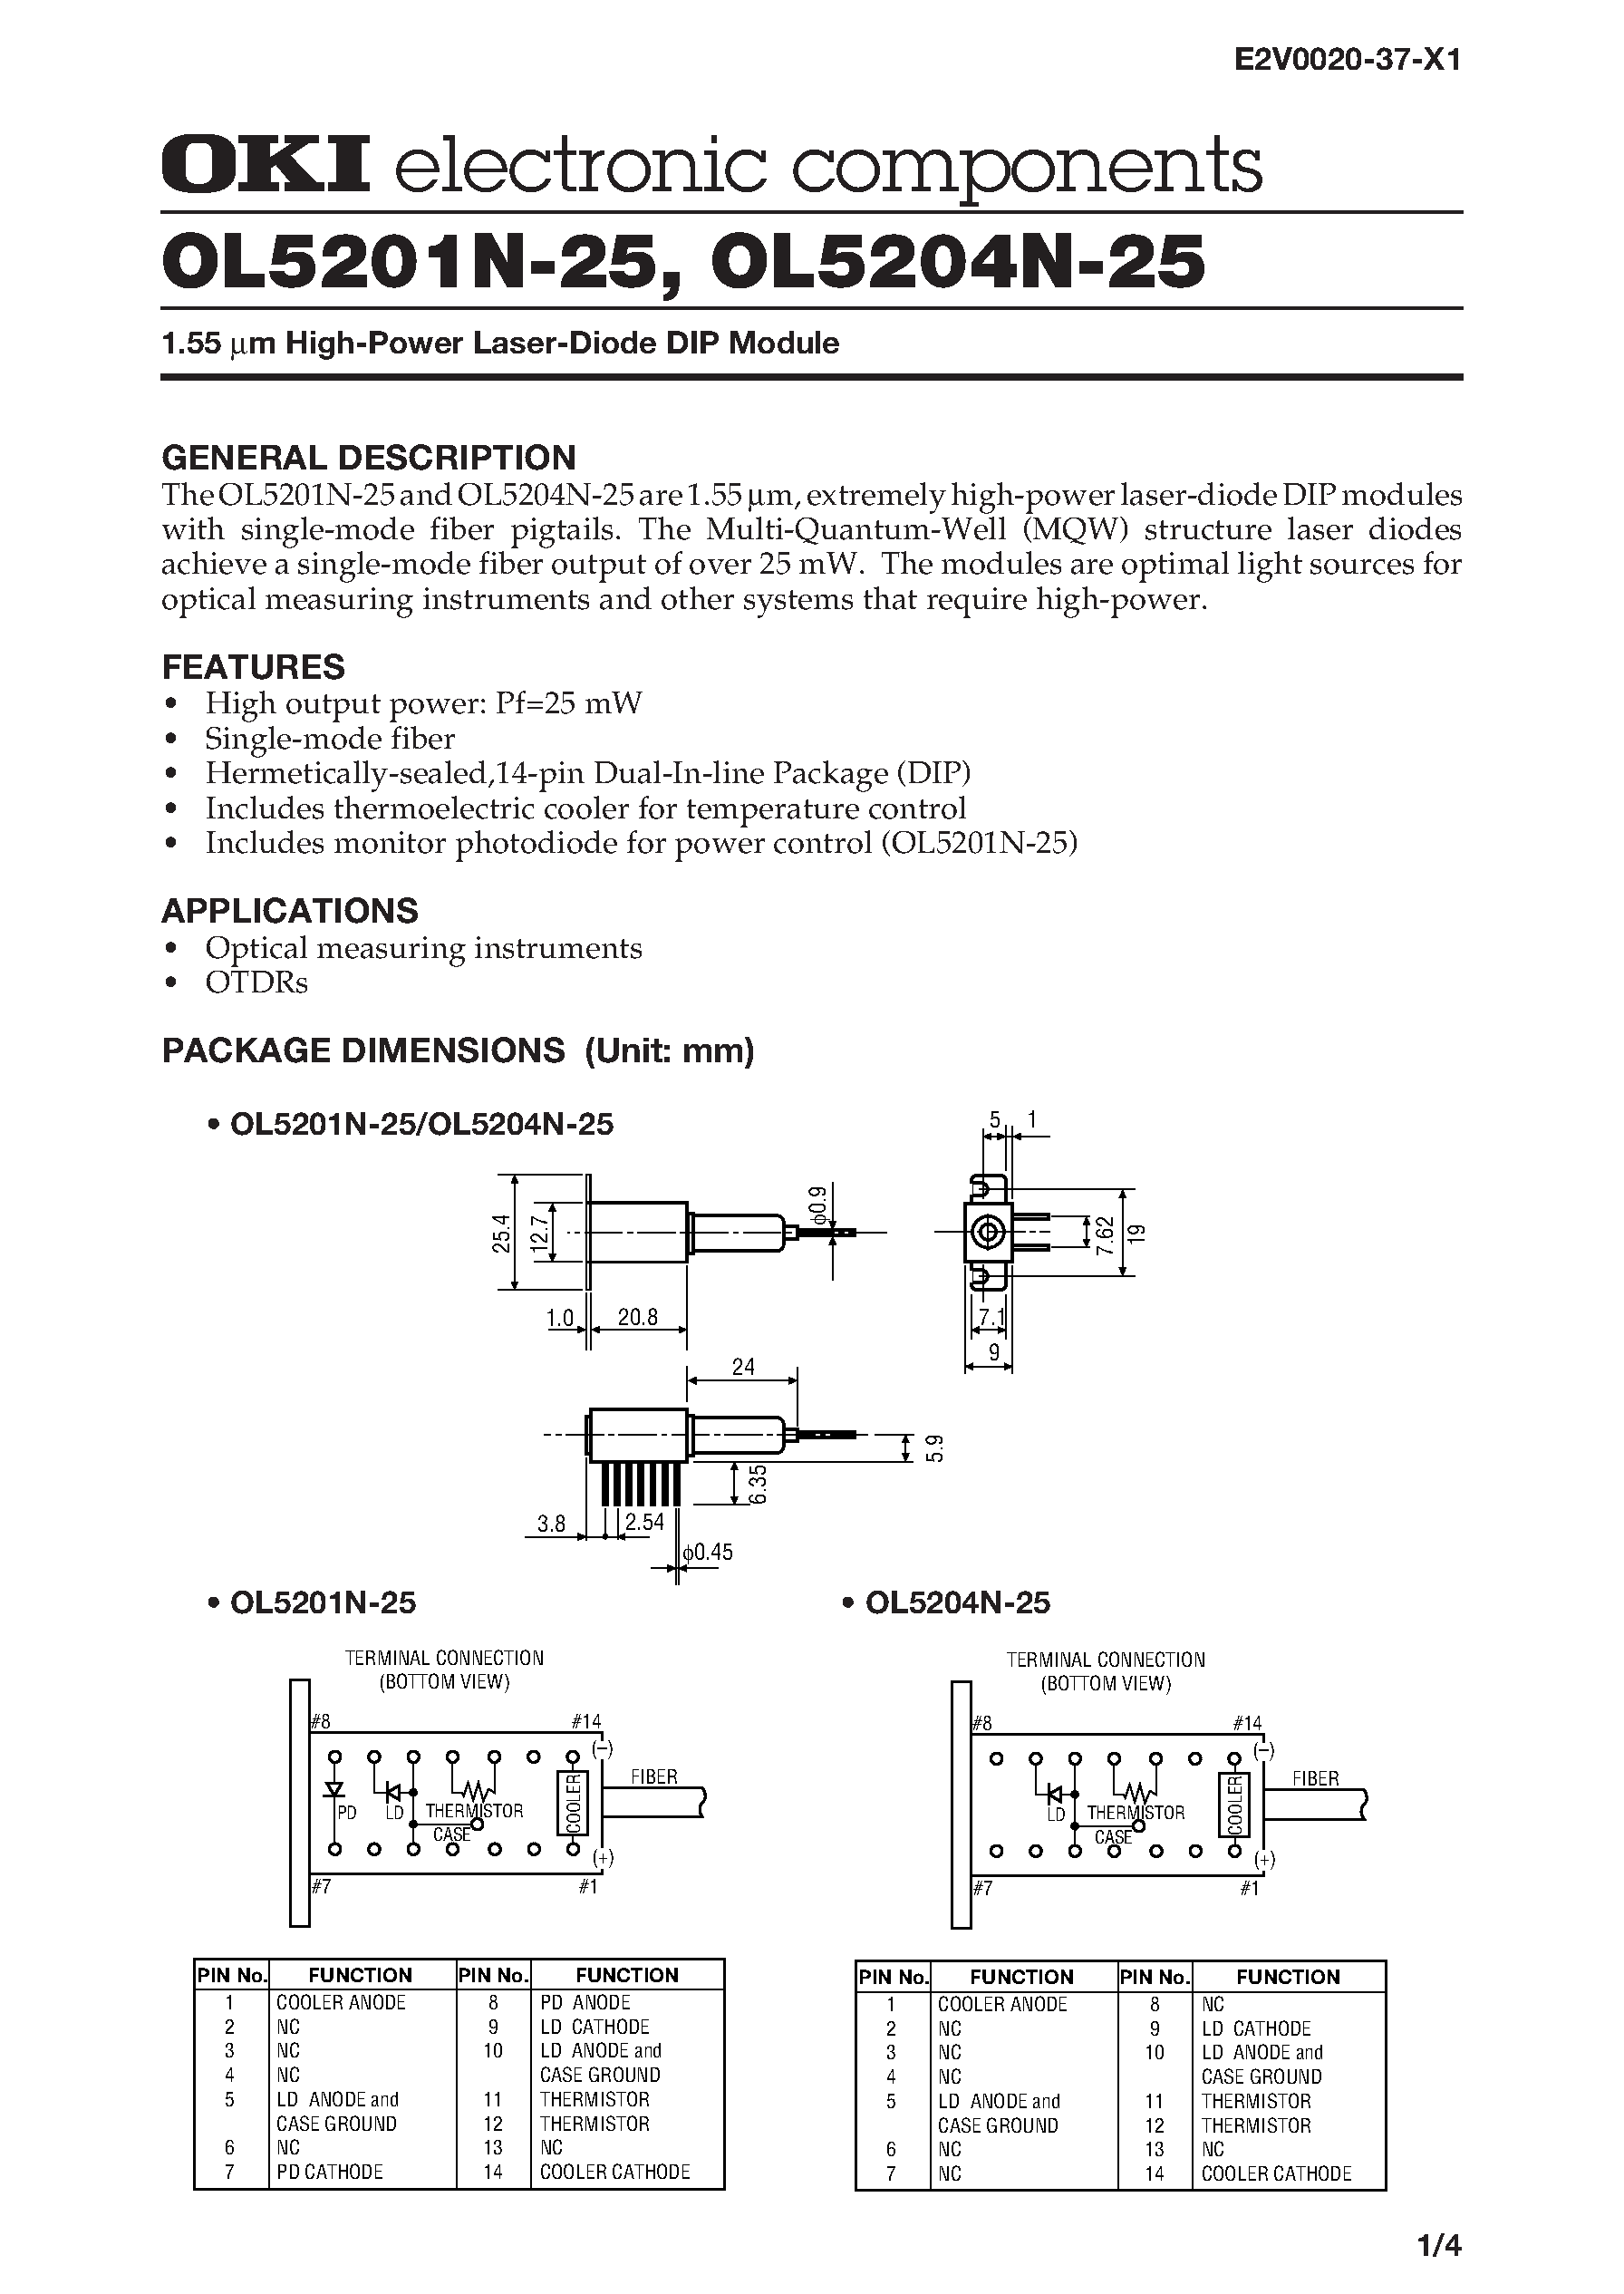 Datasheet OL5201N-25 - 1.55 m High-Power Laser-Diode DIP Module page 1